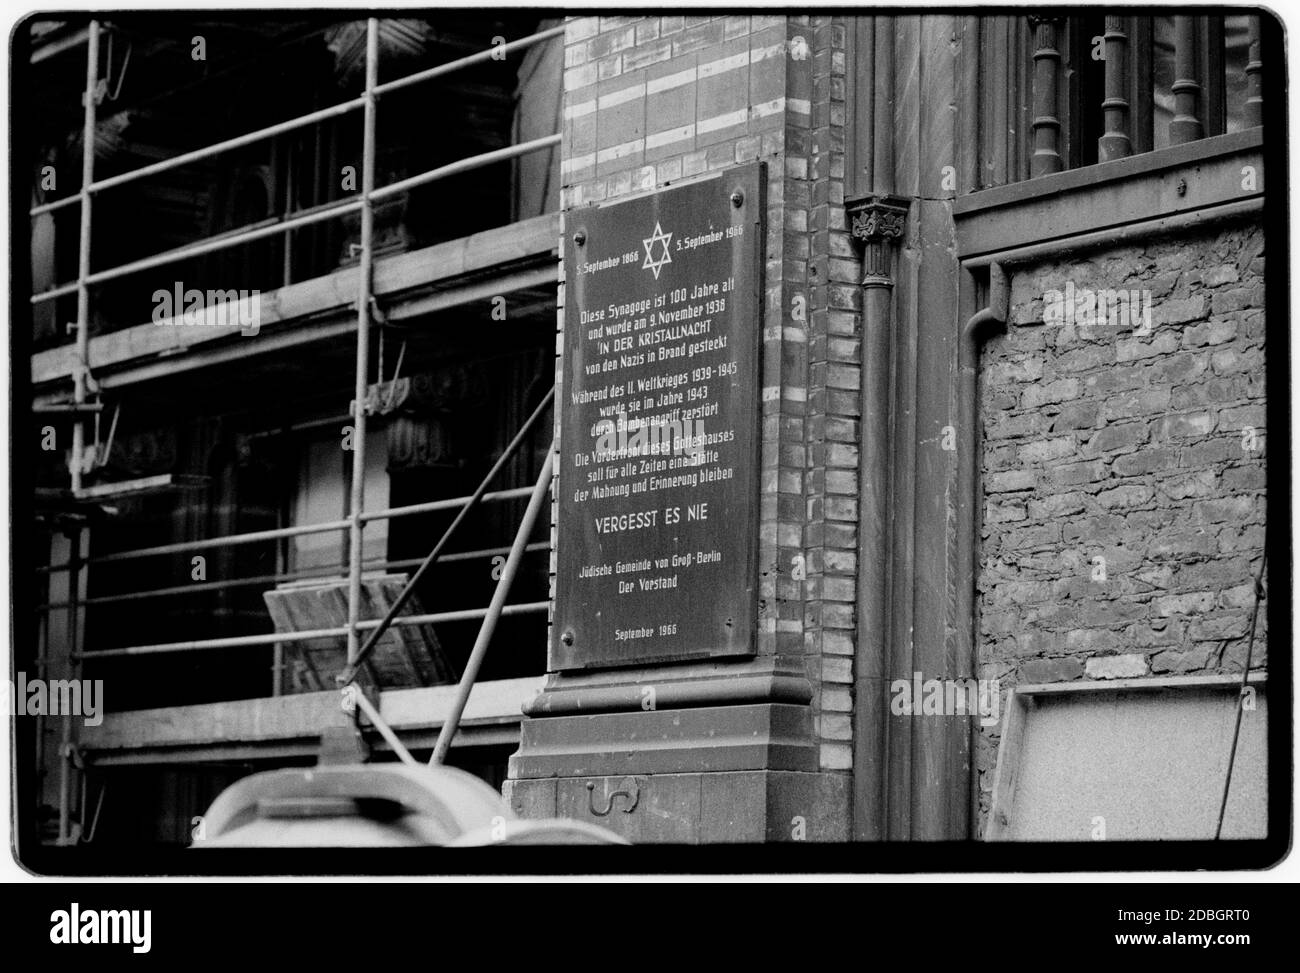 Germania Est 1990 scandita nel 2020 Sinagoga di Berlino con vetro rotto da Kristalnacht o la Notte di vetro rotto, chiamato anche pogrom di novembre, è stato un pogrom contro gli ebrei condotto da forze paramilitari di SA e civili in tutta la Germania nazista il 9–10 novembre 1938. Le autorità tedesche si sono guardate senza intervenire.[3] il nome Kristallnacht ("Notte di Cristallo") deriva dalle barbe di vetro rotto che hanno disseminato le strade dopo che le finestre dei negozi, degli edifici e delle sinagoghe di proprietà ebraica sono state abbattute. Germania orientale, Deutsche Demokratische Republik la DDR dopo la caduta del Foto Stock